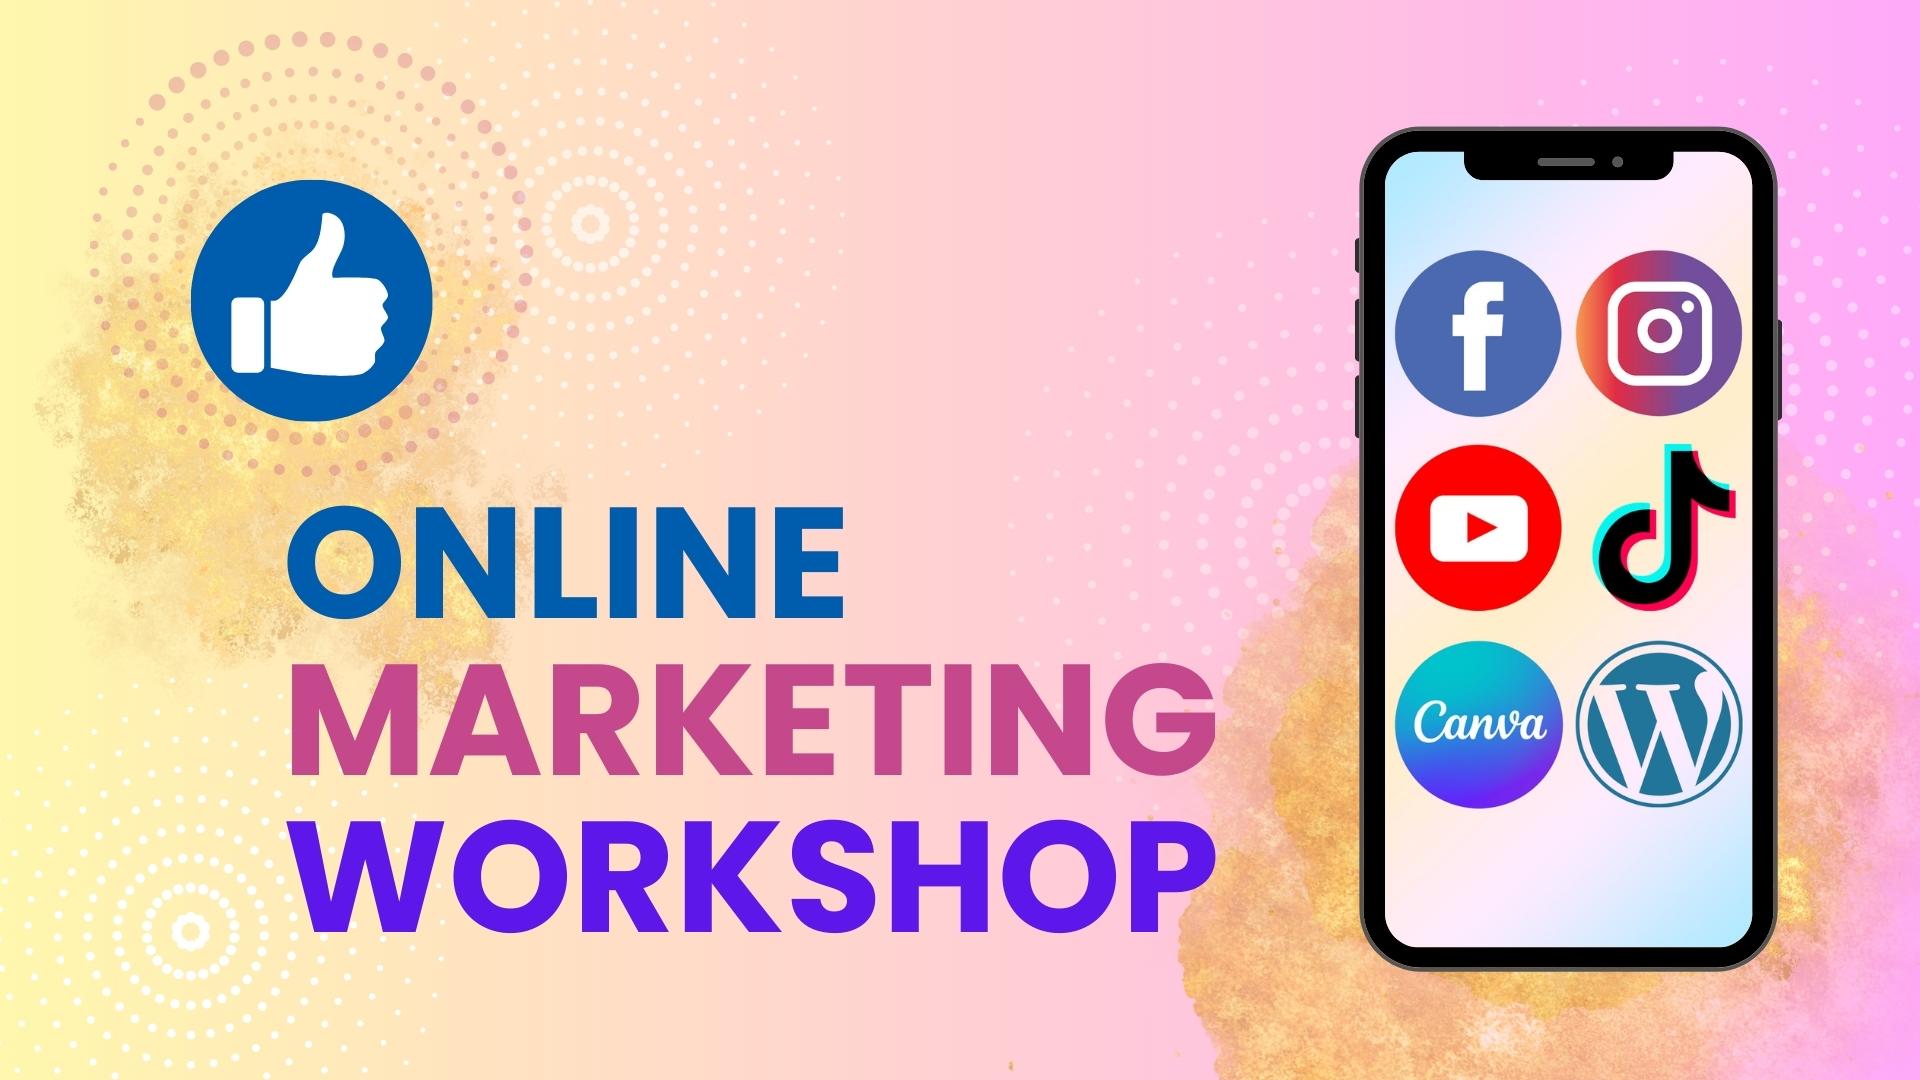 Online marketing workshopok - énmárkaépítés, videó- és weboldalkészítés